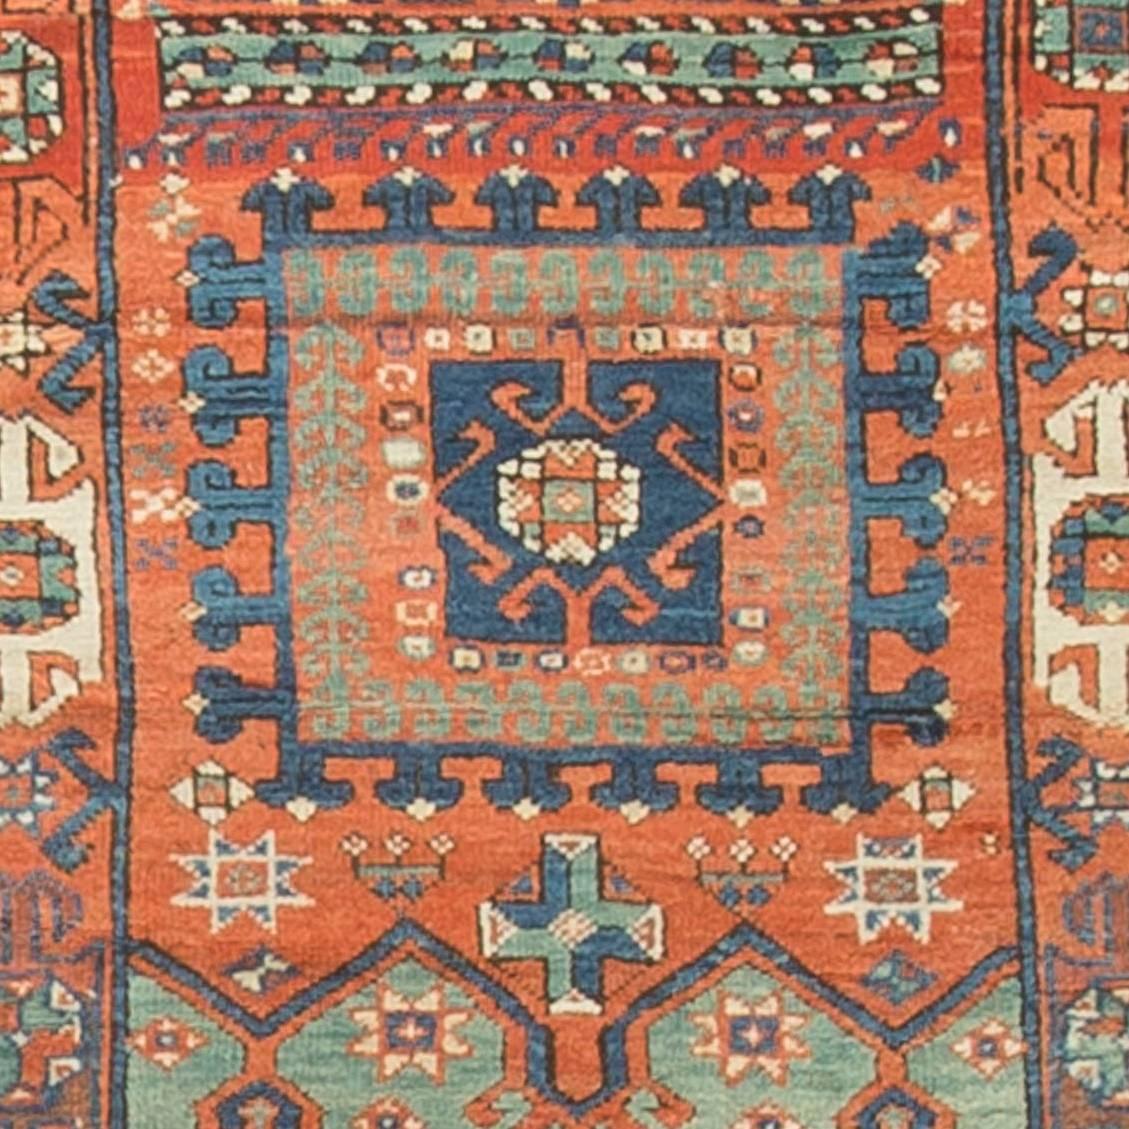 Un tapis turc ancien de Bergama reflétant un style caucasien. Le tissage de tapis dans la région de Bergama remonte au 11e siècle. Taille : 4' x 5'7
 